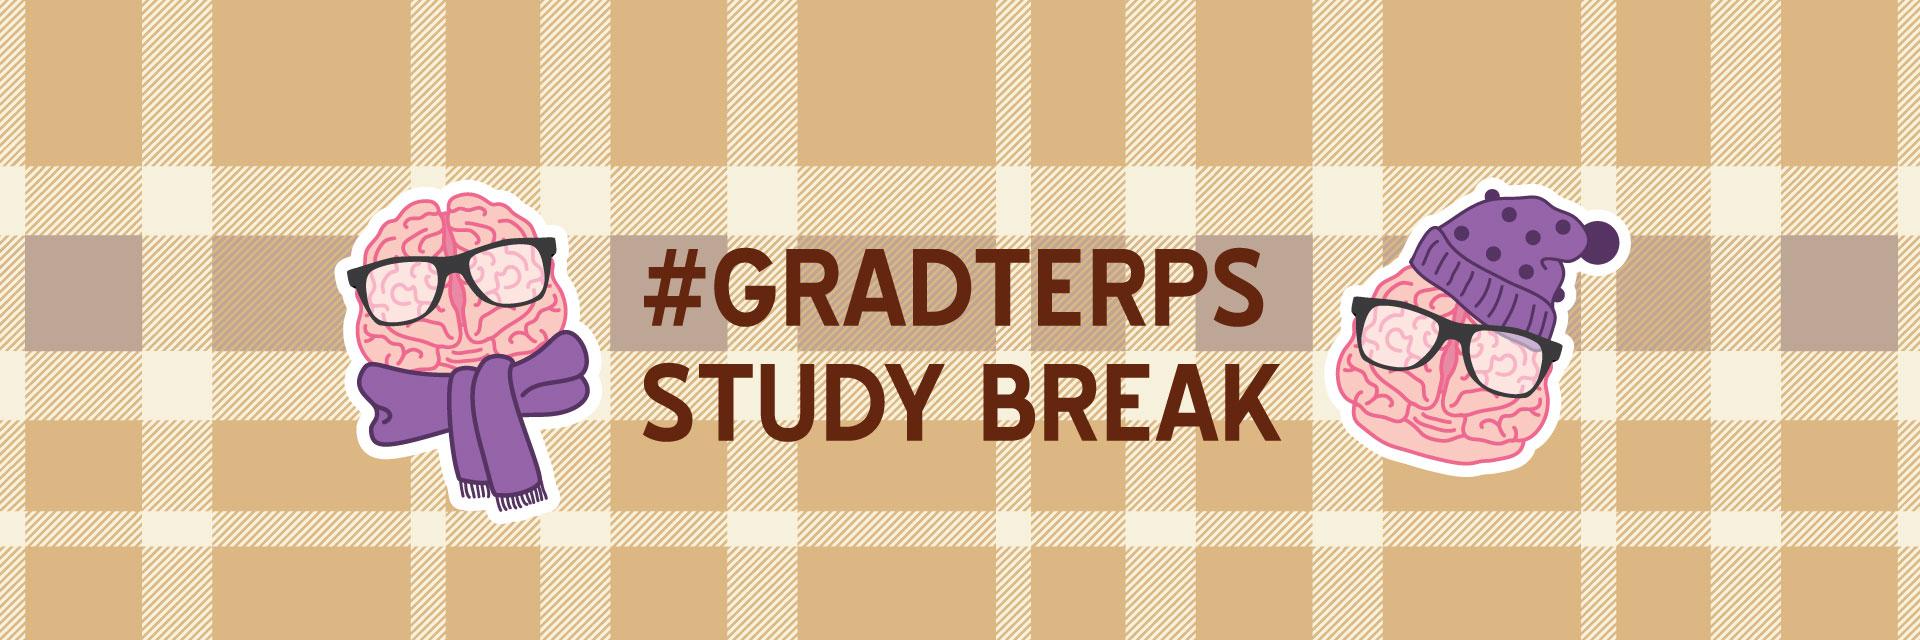 GradTerps Fall Study Break